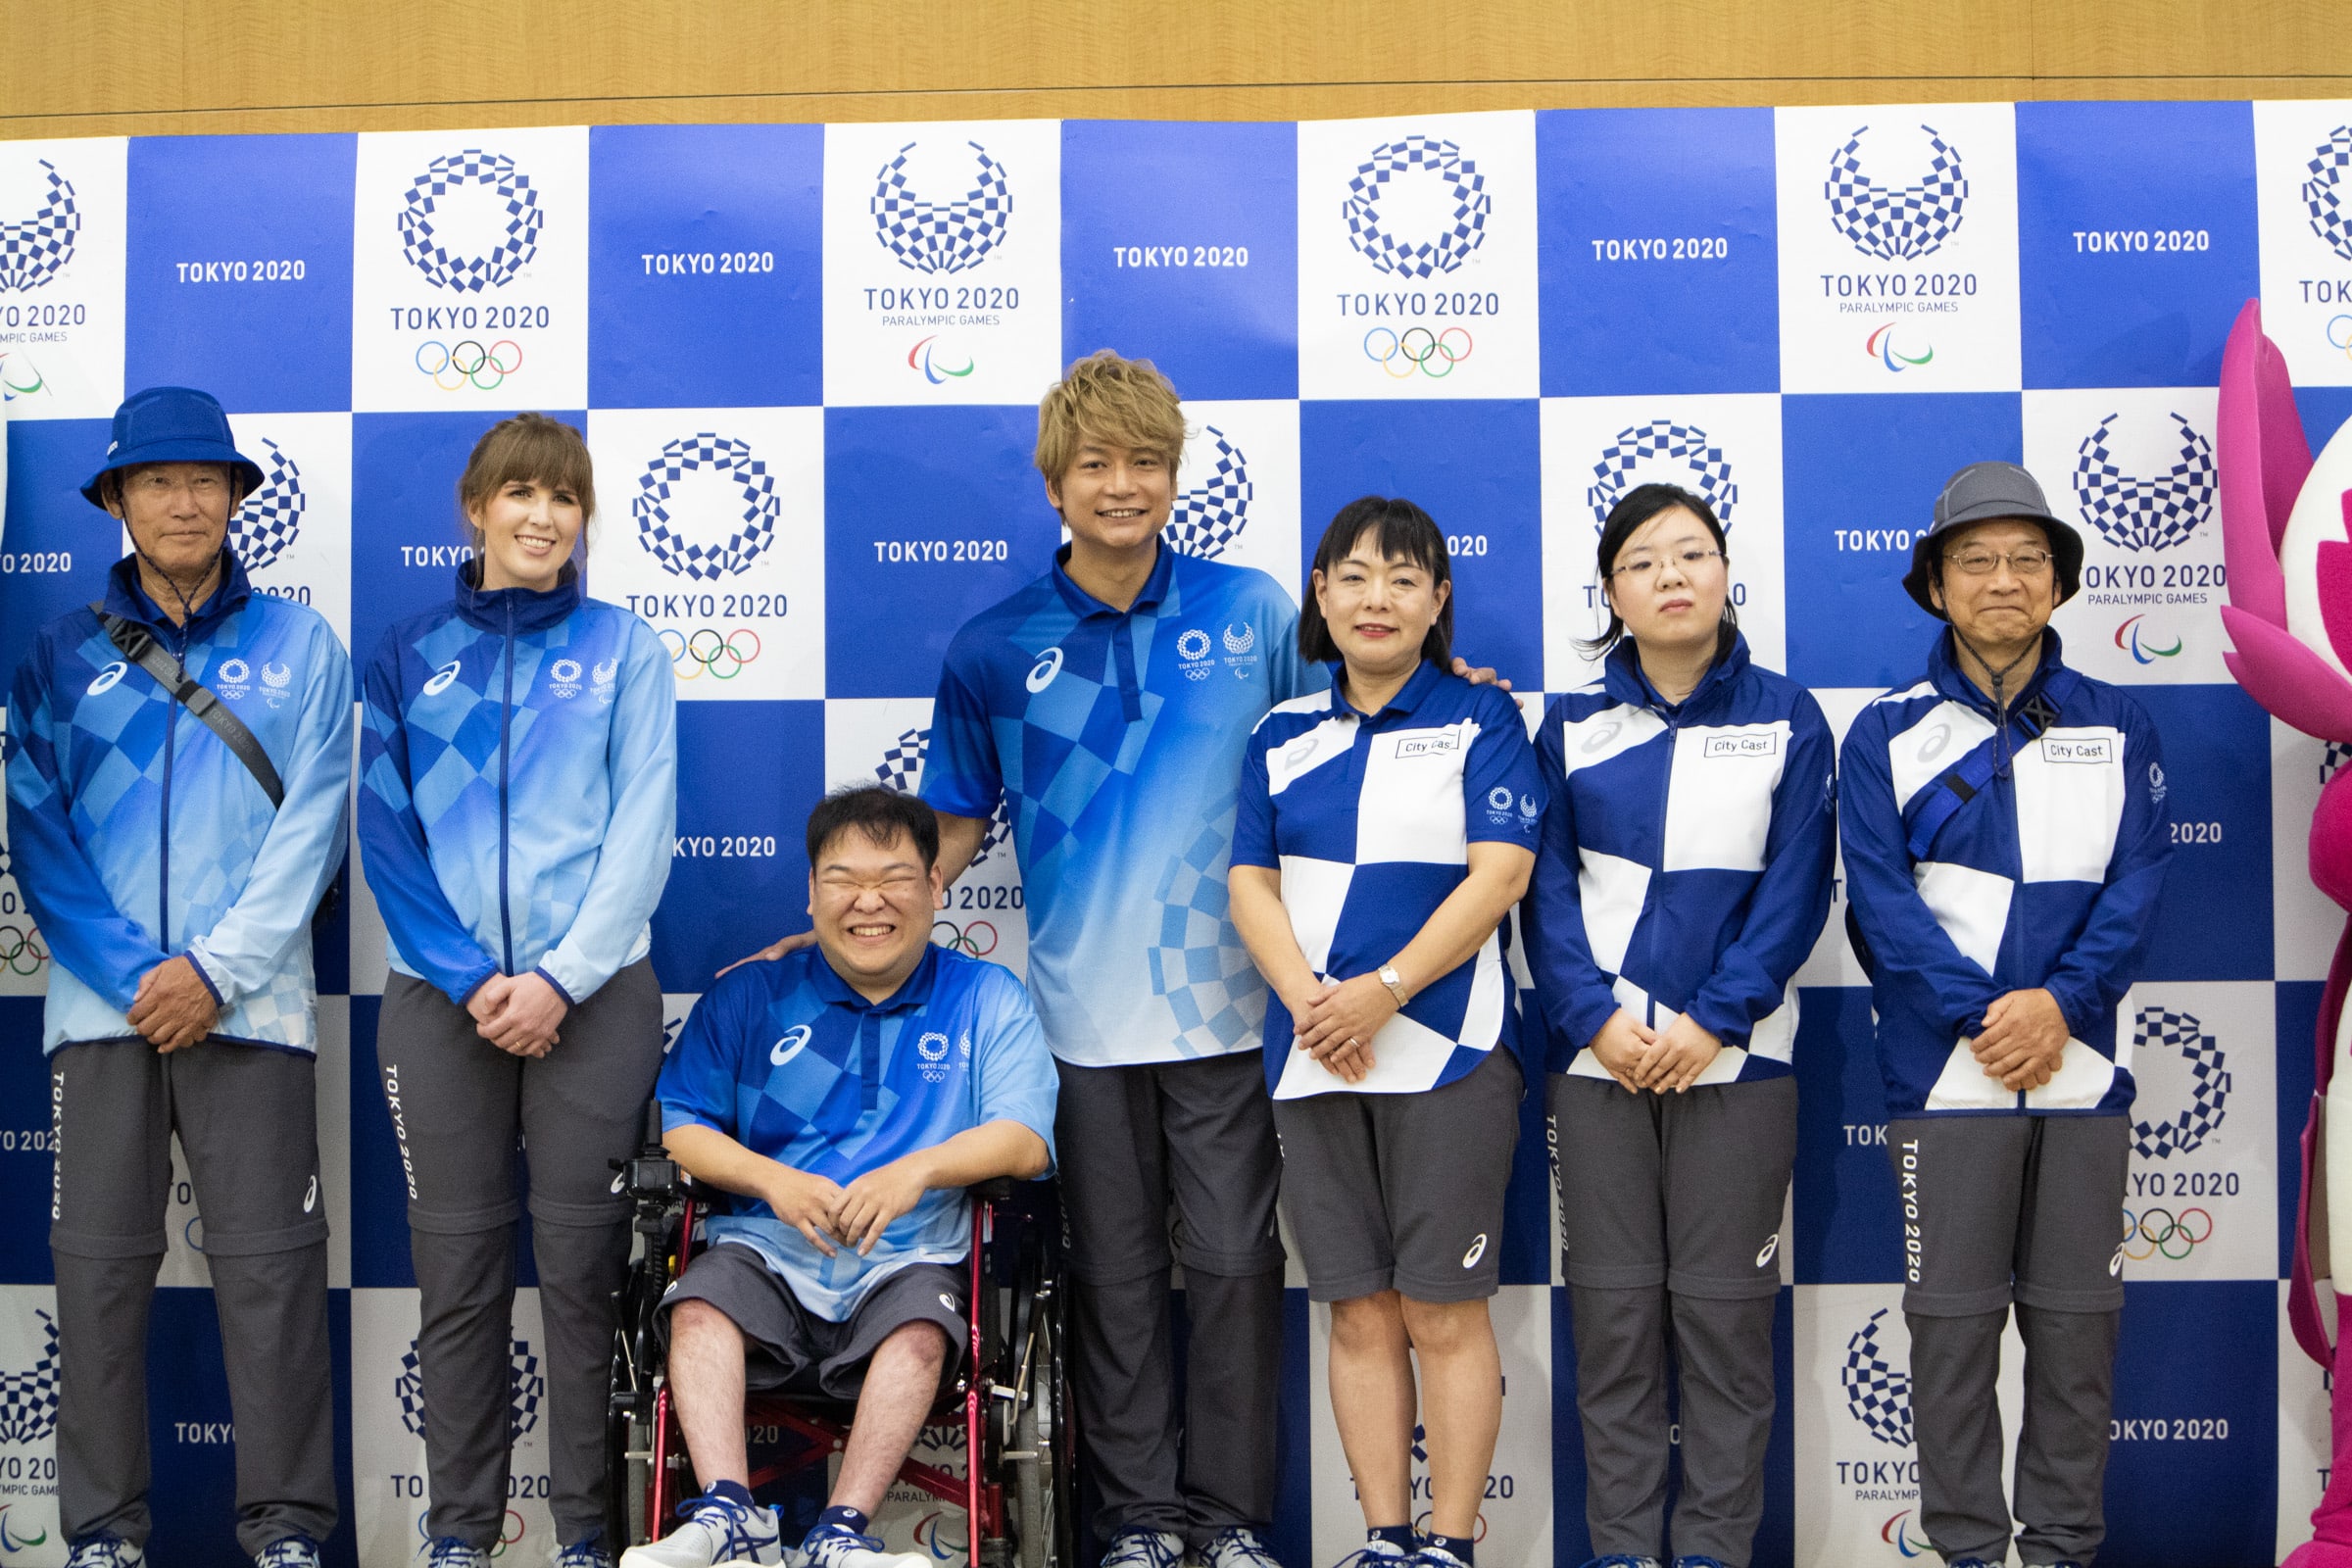 東京五輪スタッフとボランティアのユニフォーム公開、アシックスがシューズなど計8点を製作